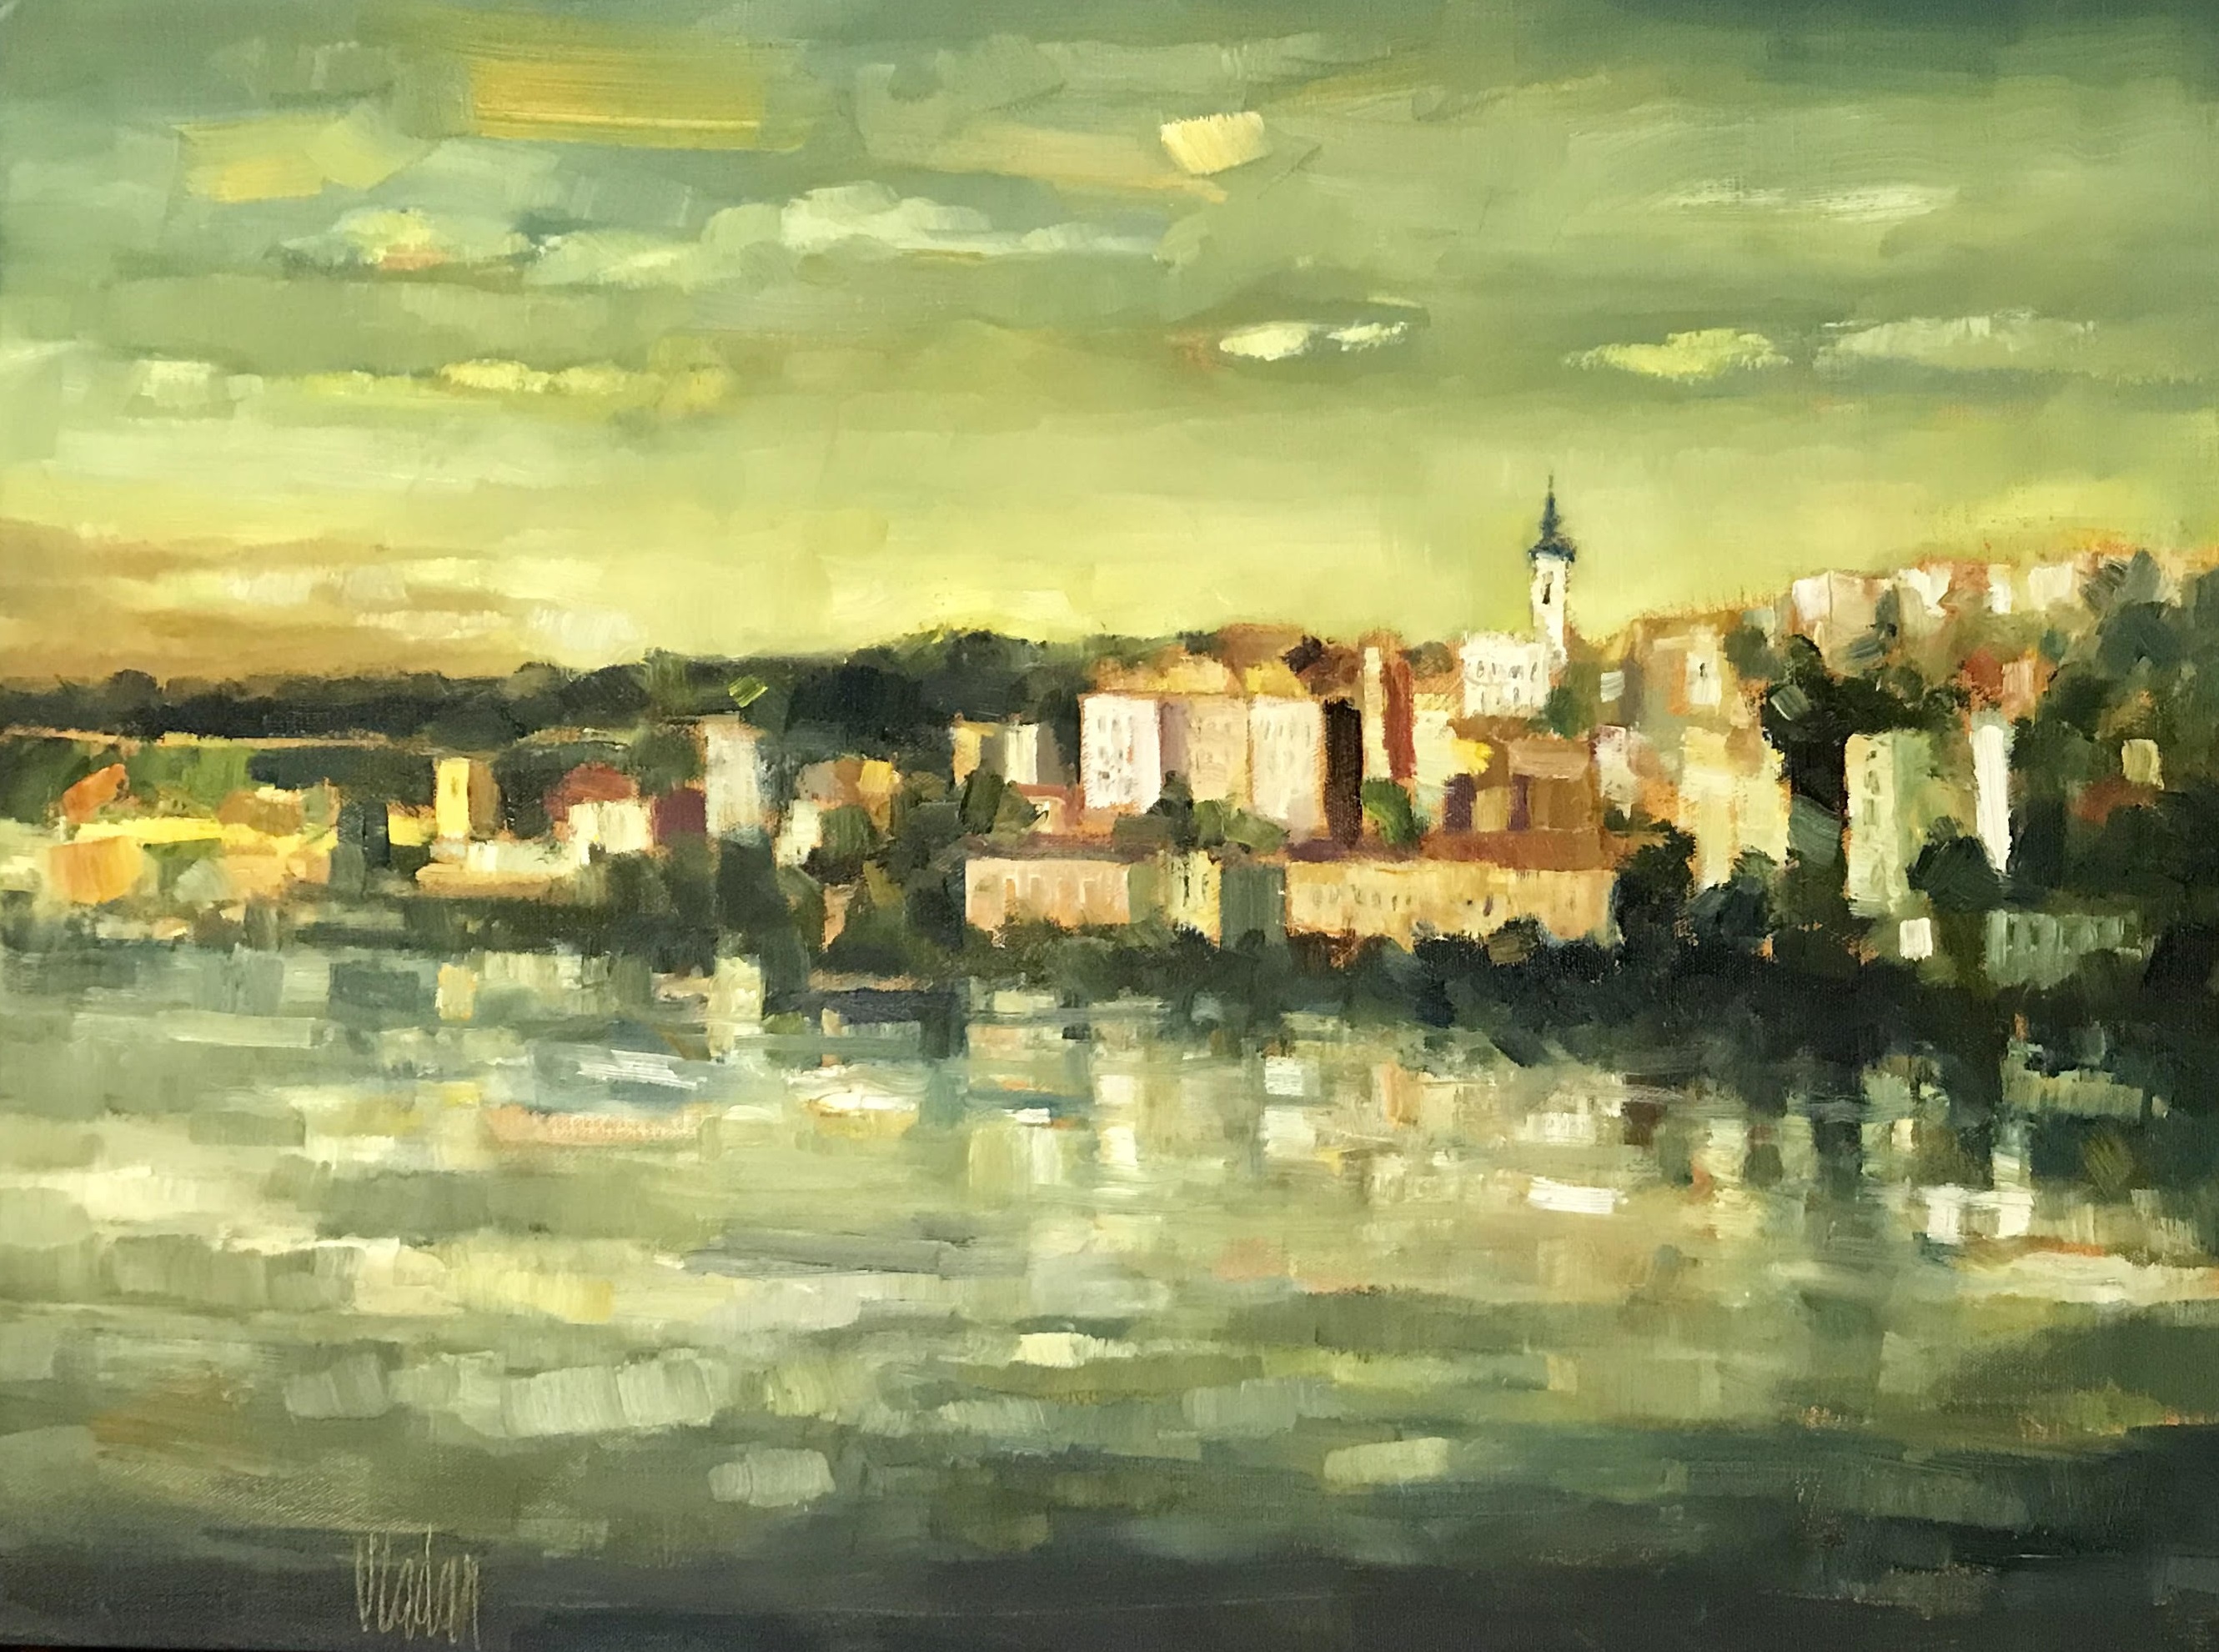 Vladan Ignjatović - Oil on canvas   24 x 18” ($1200)